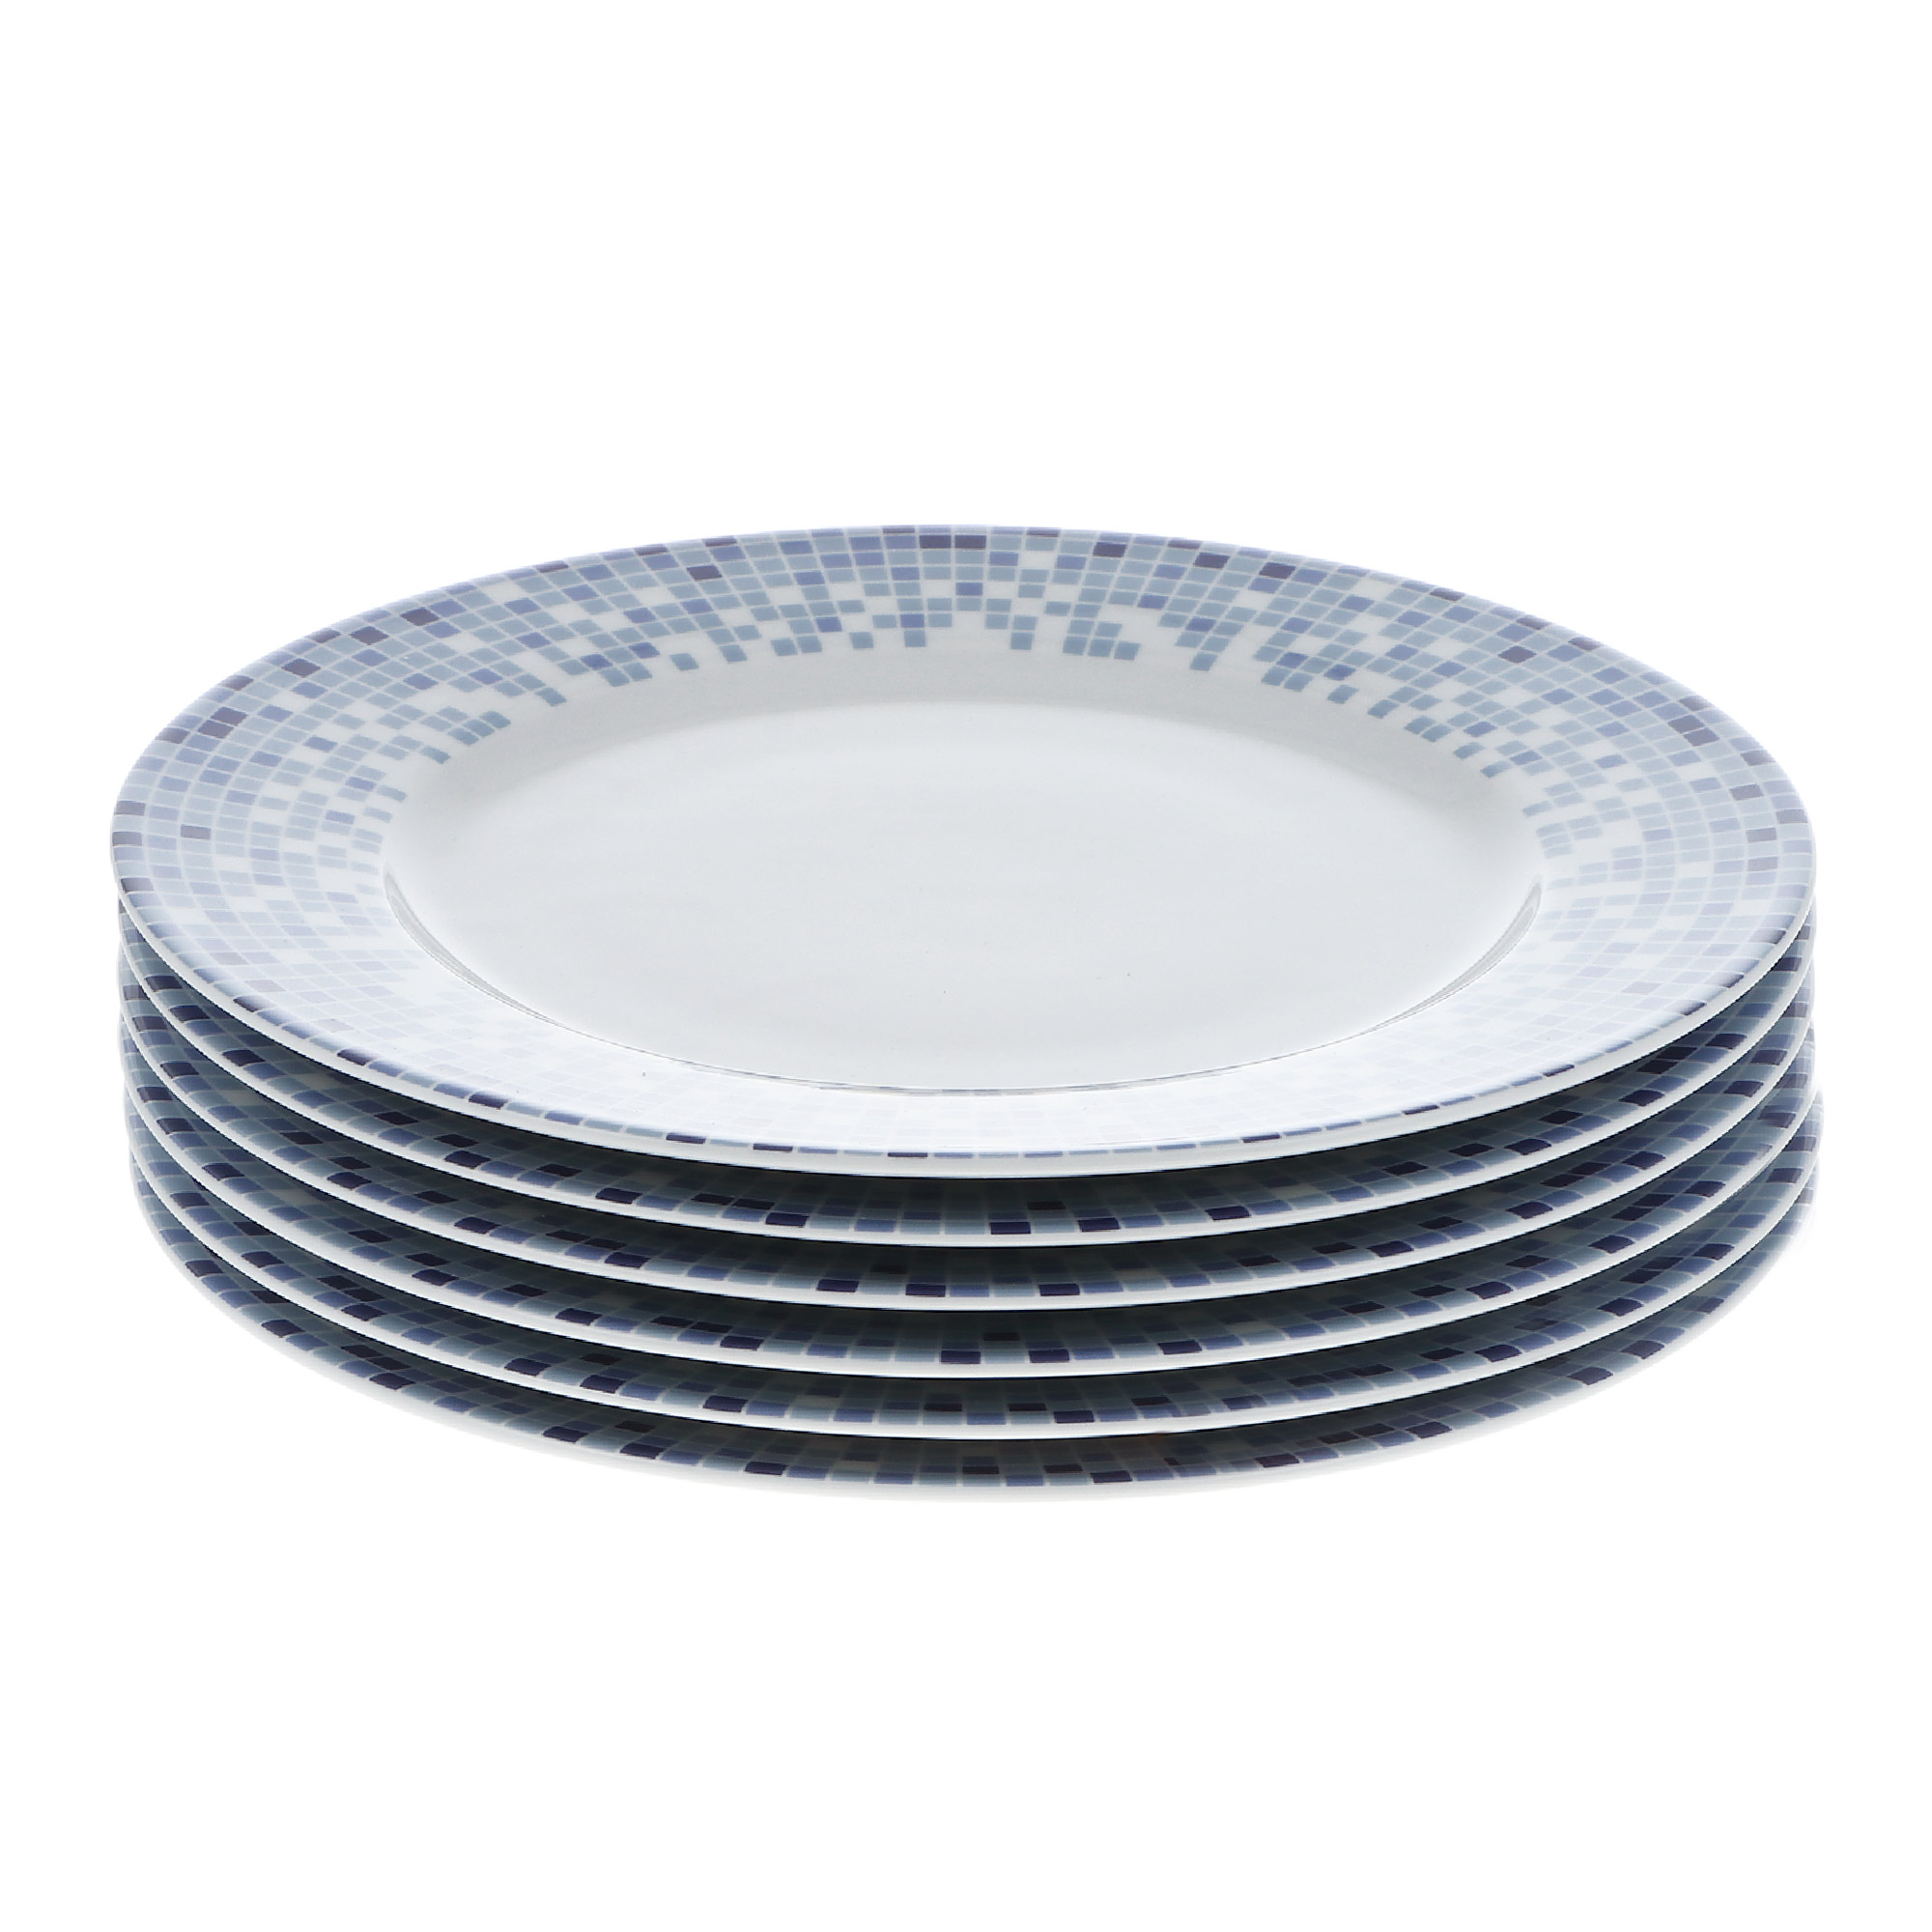 Набор тарелок 19 см декор мозаика Thun1794 набор тарелок для супа coup soup 19см thun1794 опал декор широкий кант платина золото